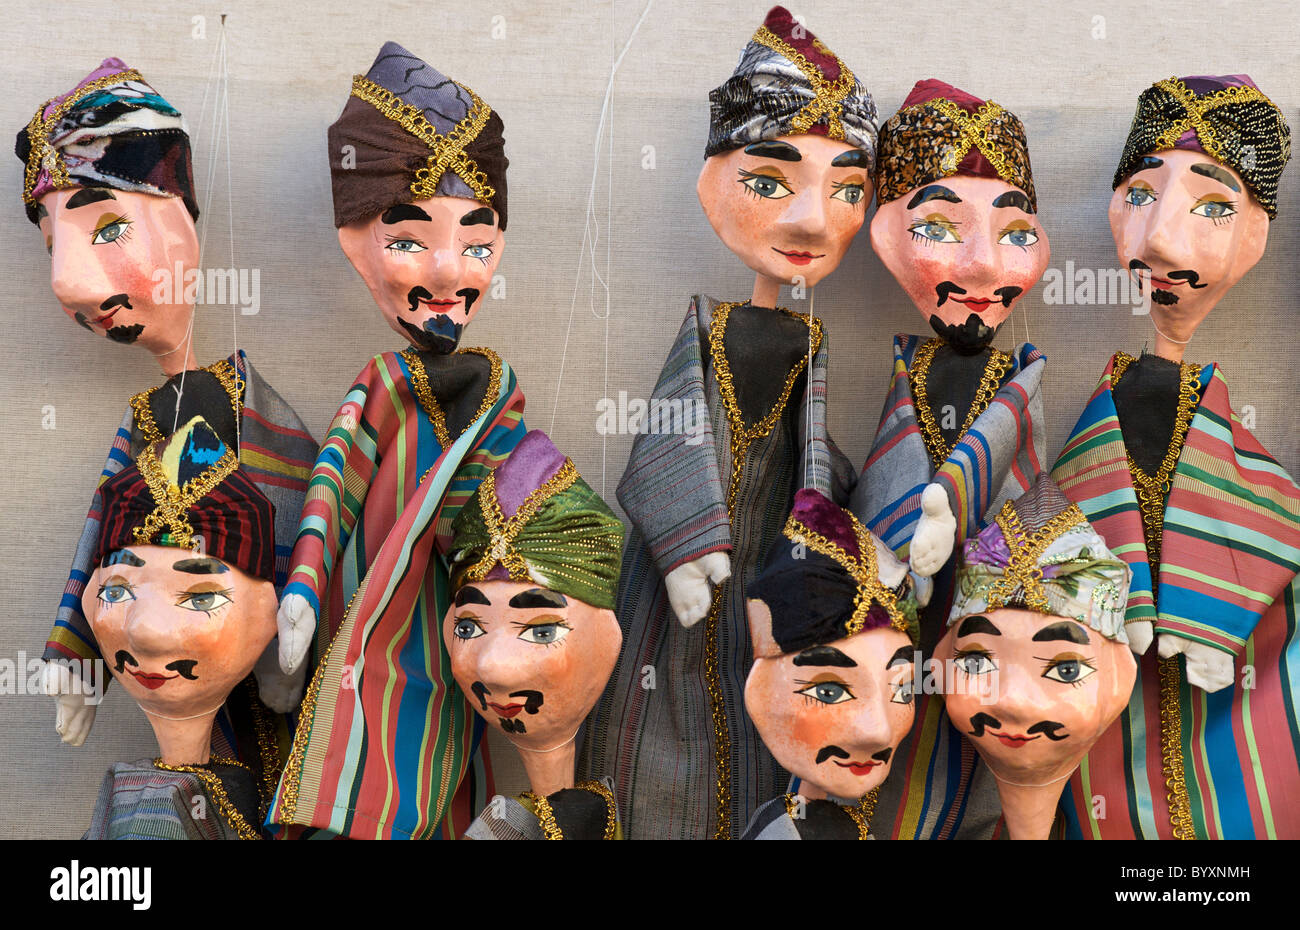 Traditional handmade Uzbeki puppets for sale at market, Khiva, Uzbekistan Stock Photo